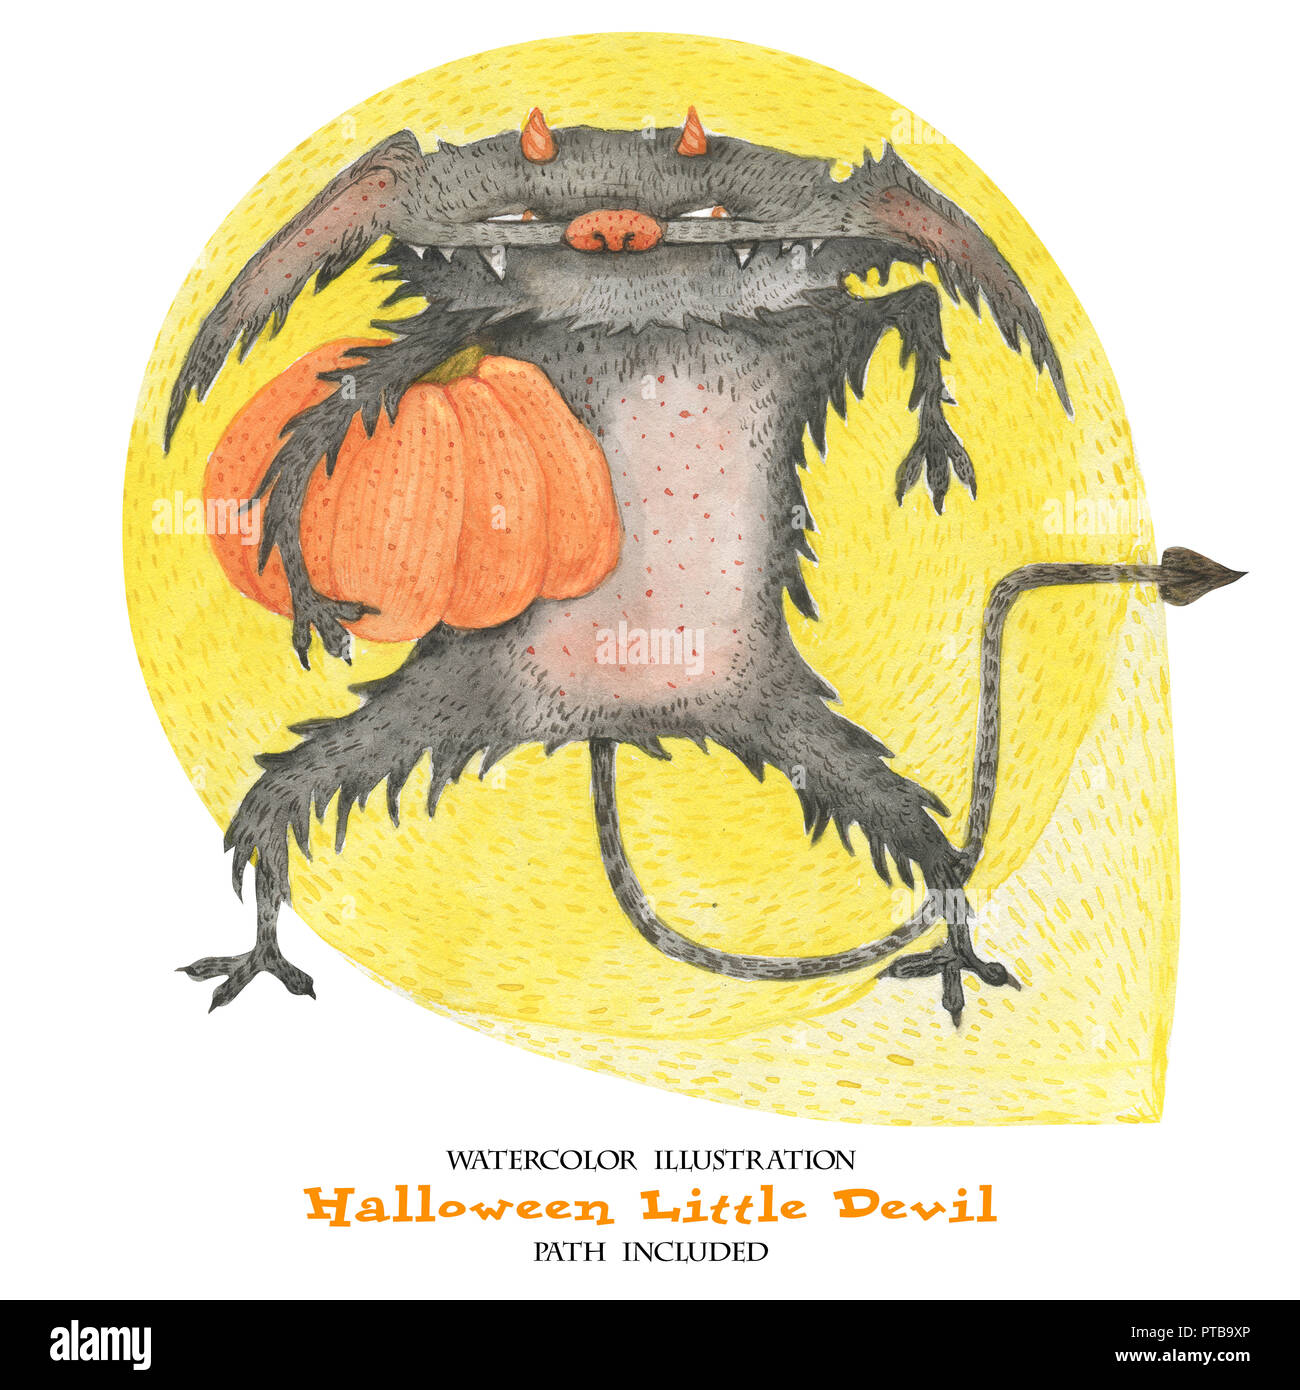 Illustration à l'aquarelle pour l'Halloween. Le petit diable vole un potiron. Isoalted, chemin inclus Banque D'Images